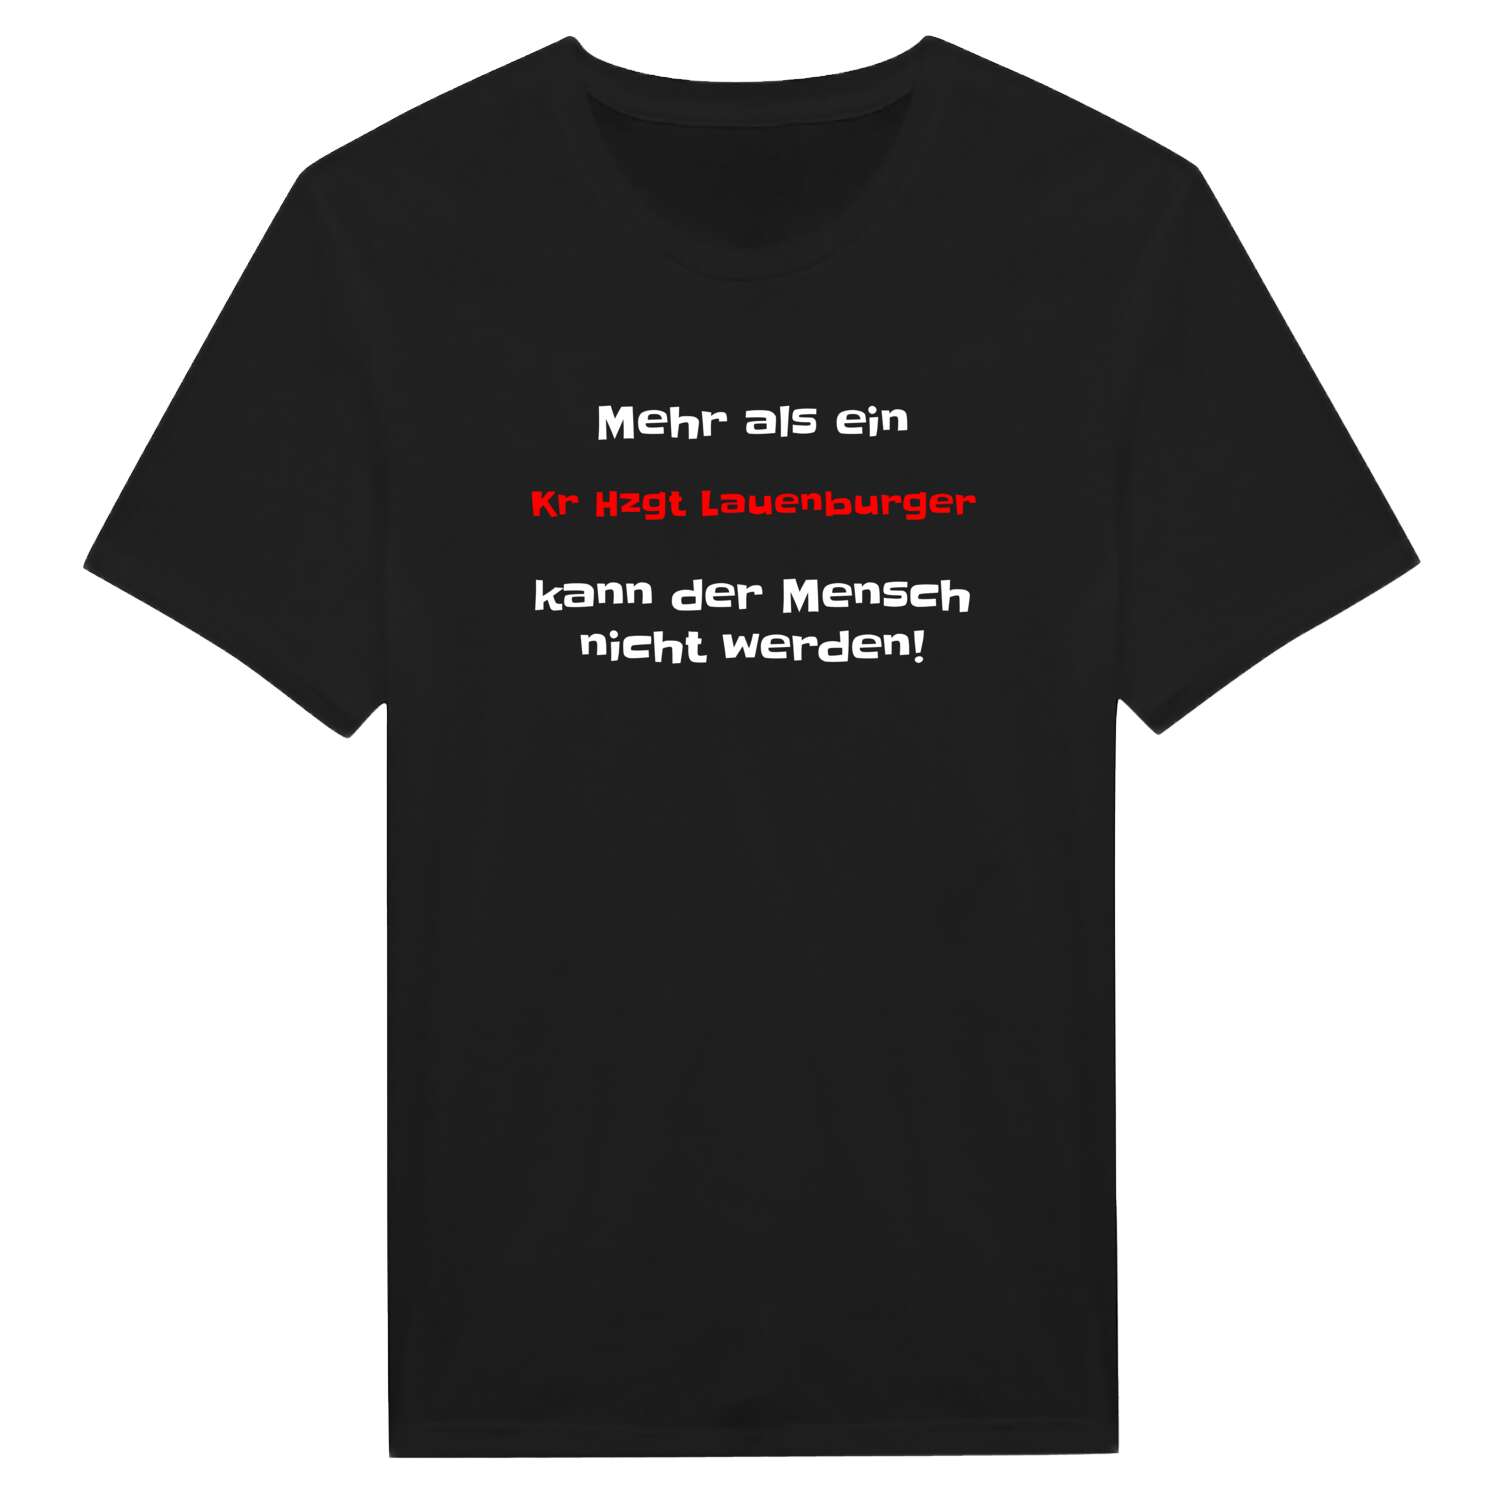 Kr Hzgt Lauenburg T-Shirt »Mehr als ein«